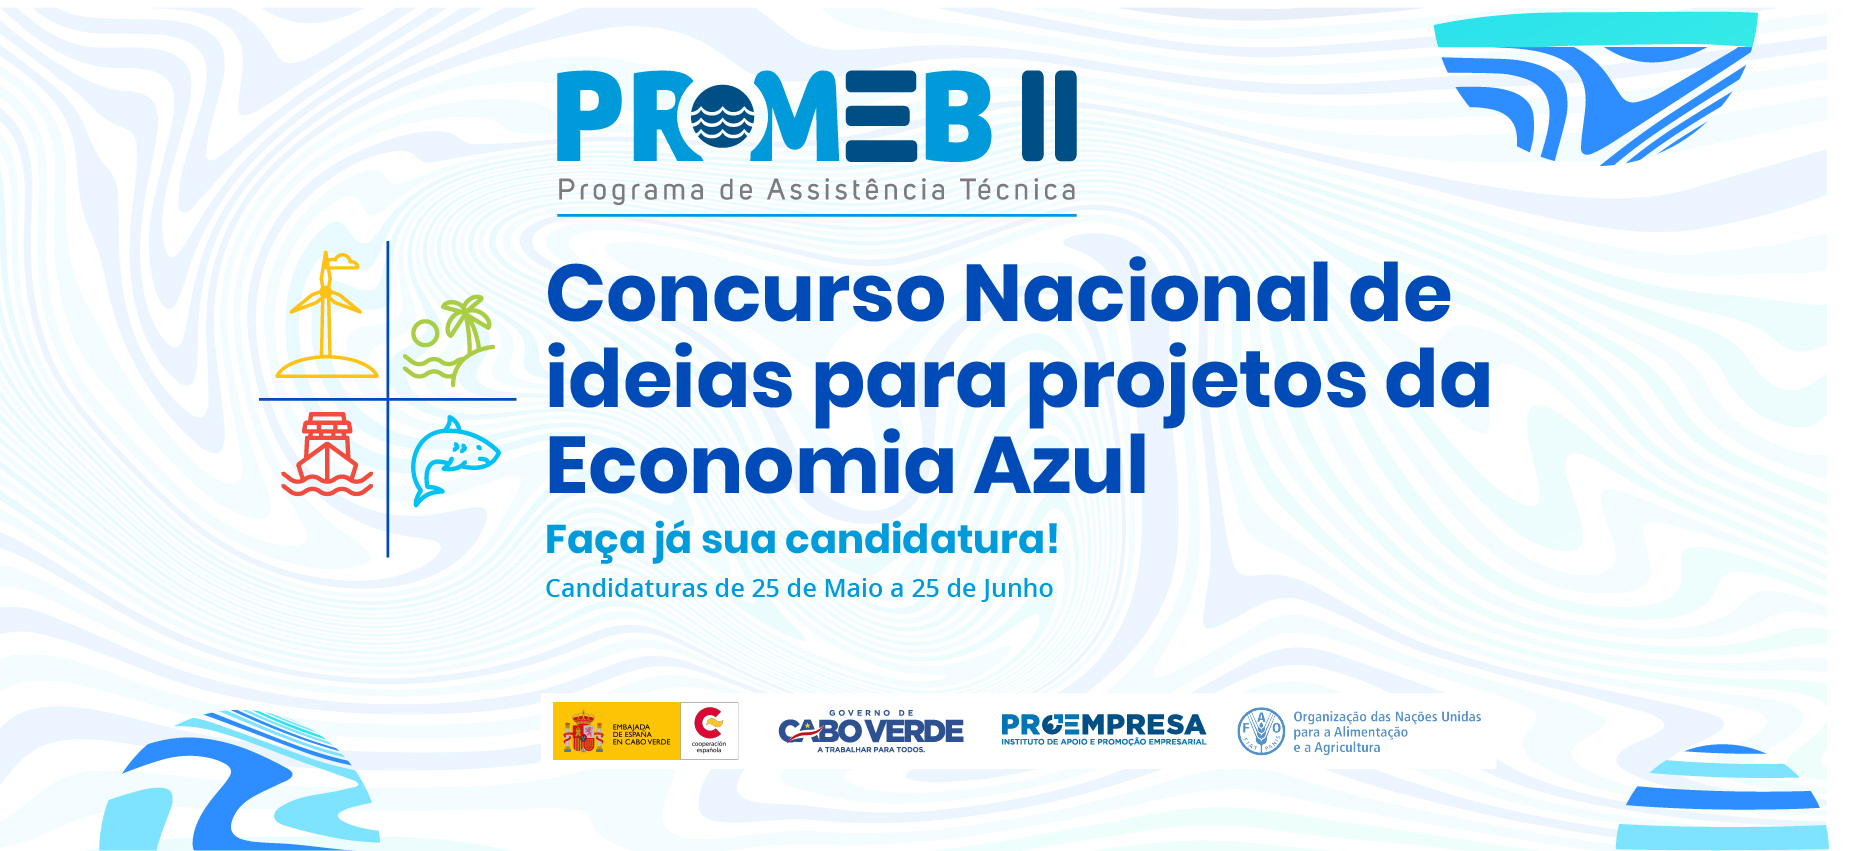 Concurso Nacional de Ideias para projetos da Economia Azul, no âmbito do Programa de Assistência Técnica para a Economia Azul - PROMEB II.